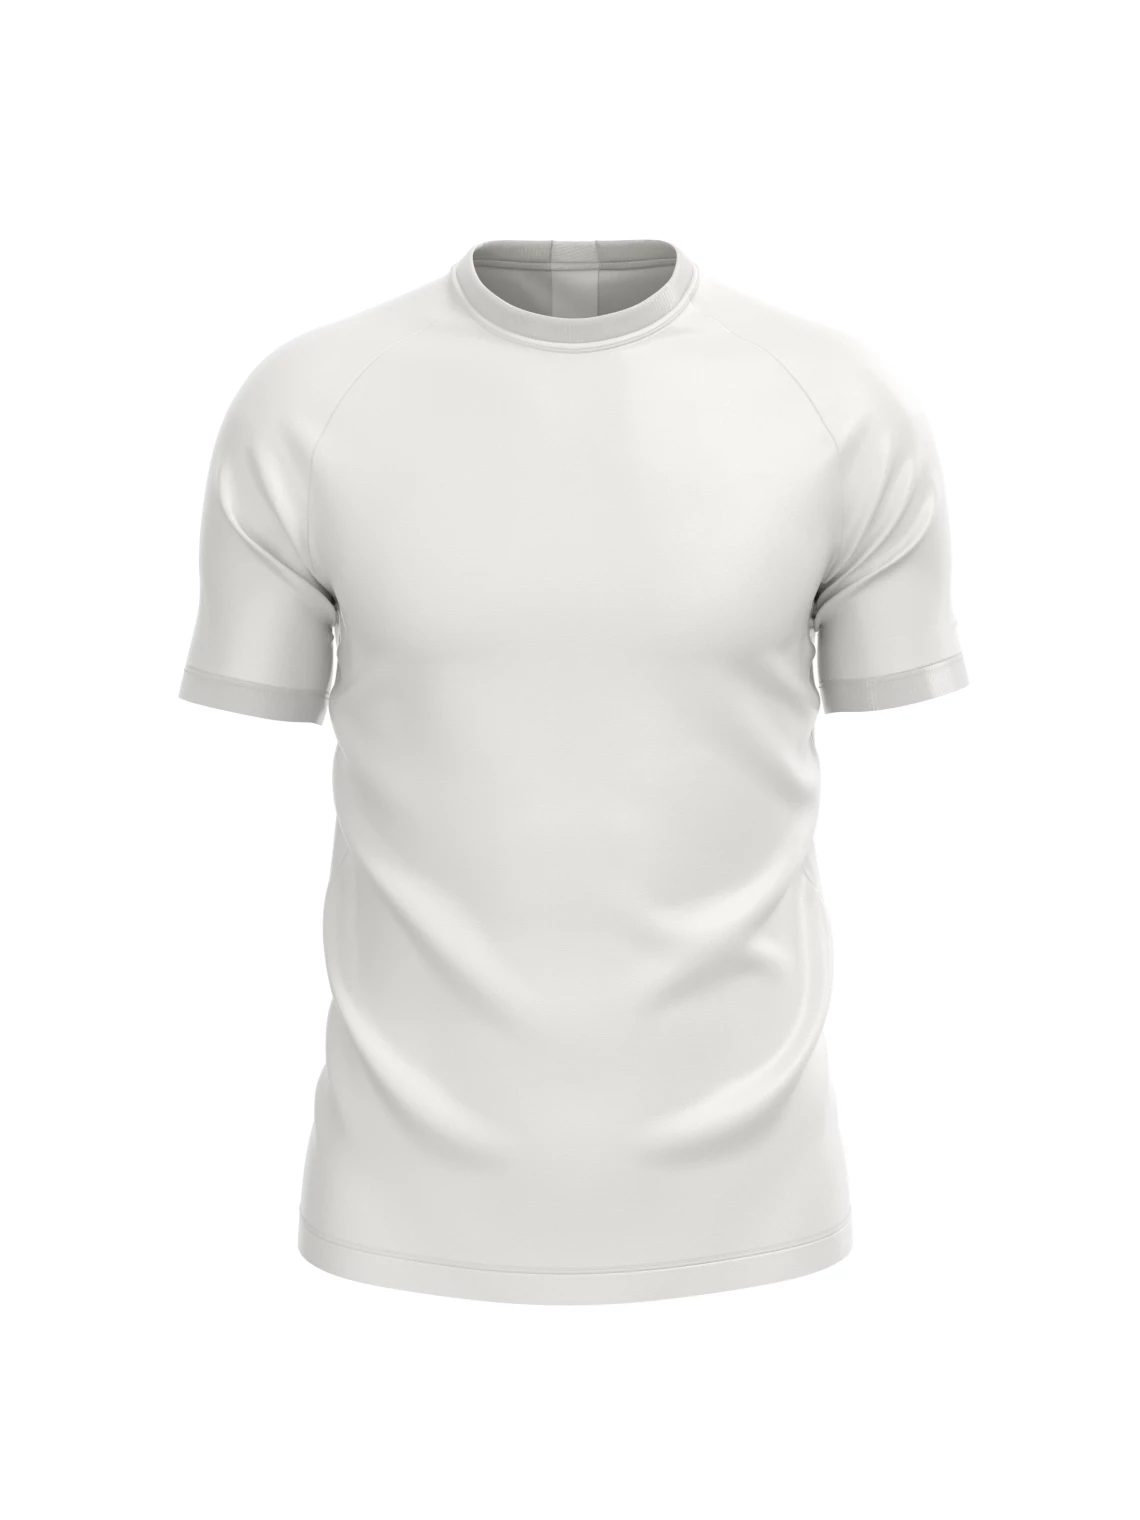 Herren-Sport-T-Shirt mit Aufdruck Standard Sublimation